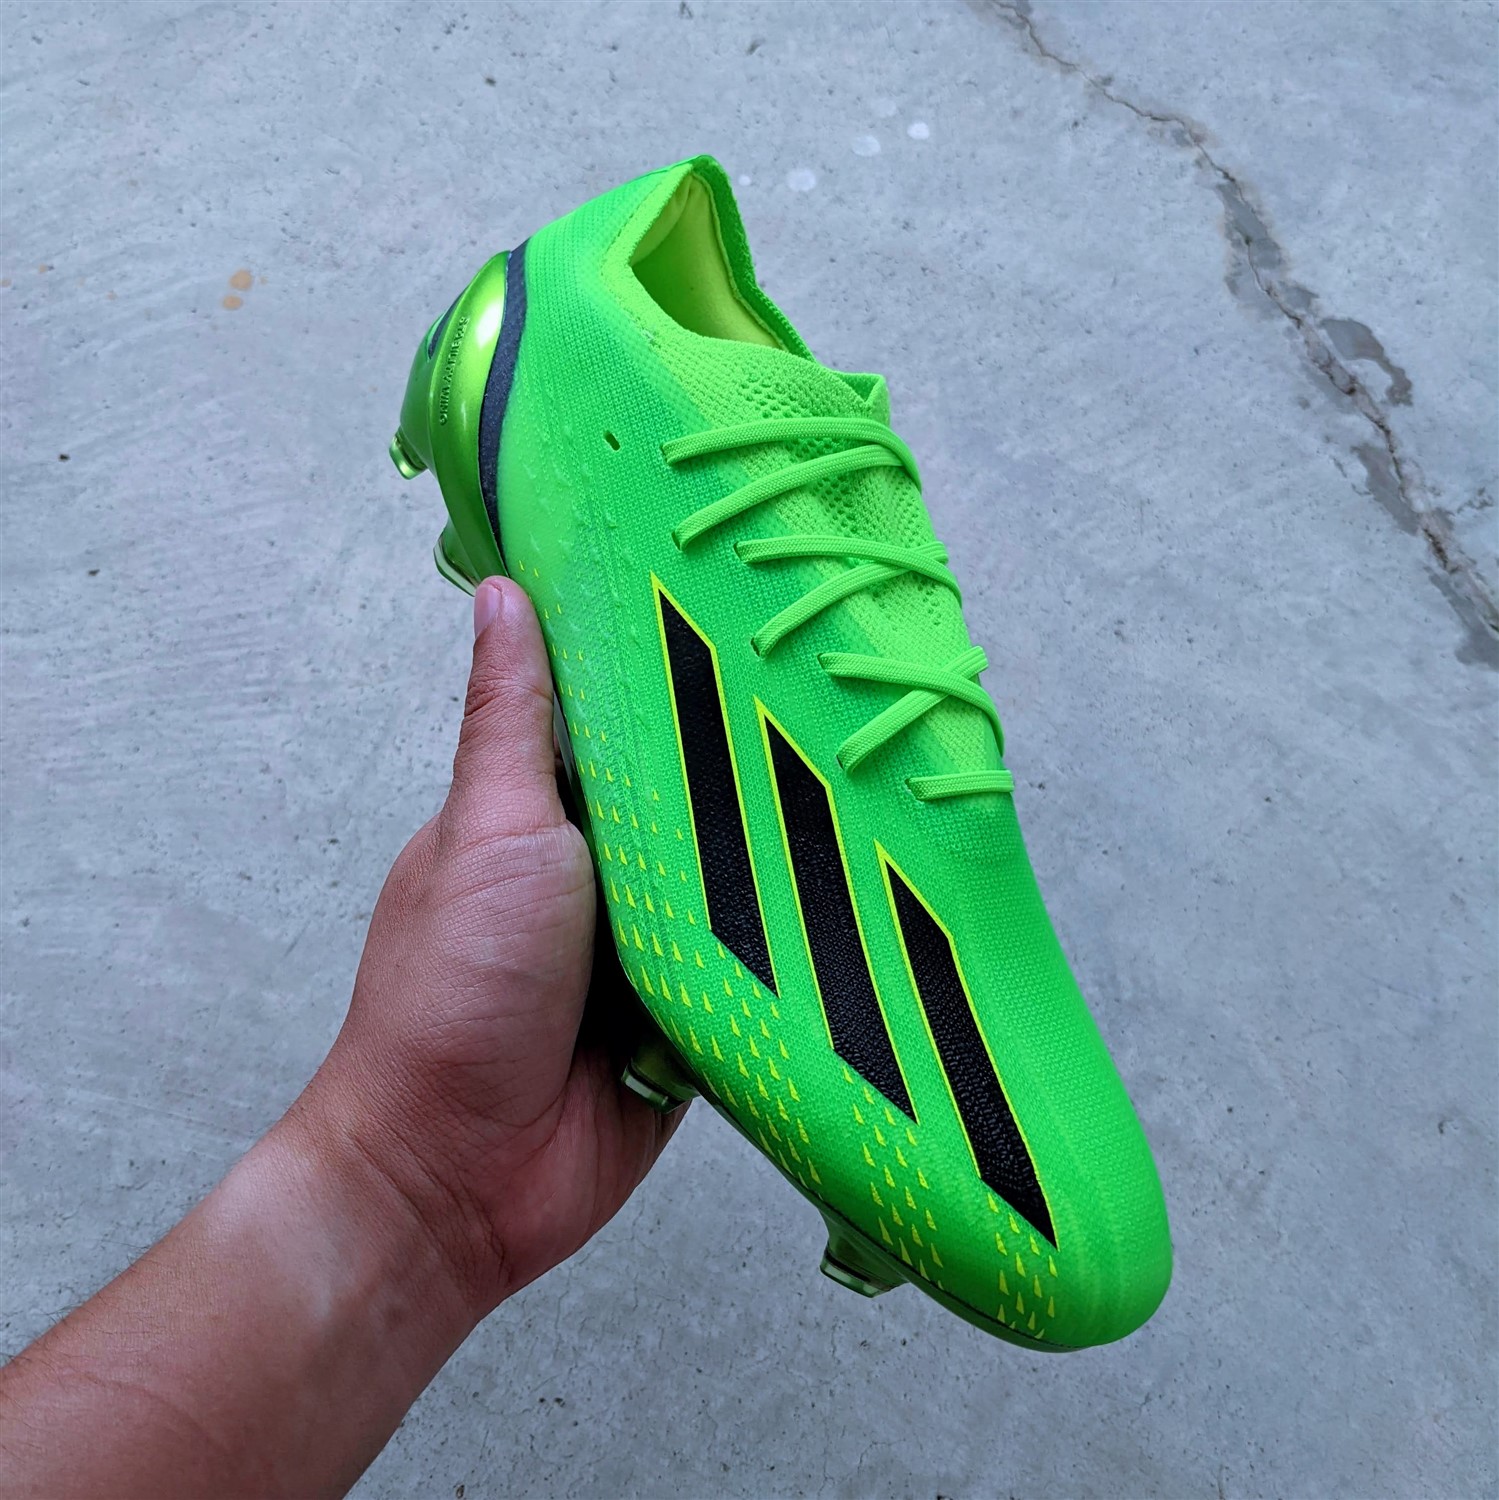 adidas x speedportal.1 football boots soccer cleats review